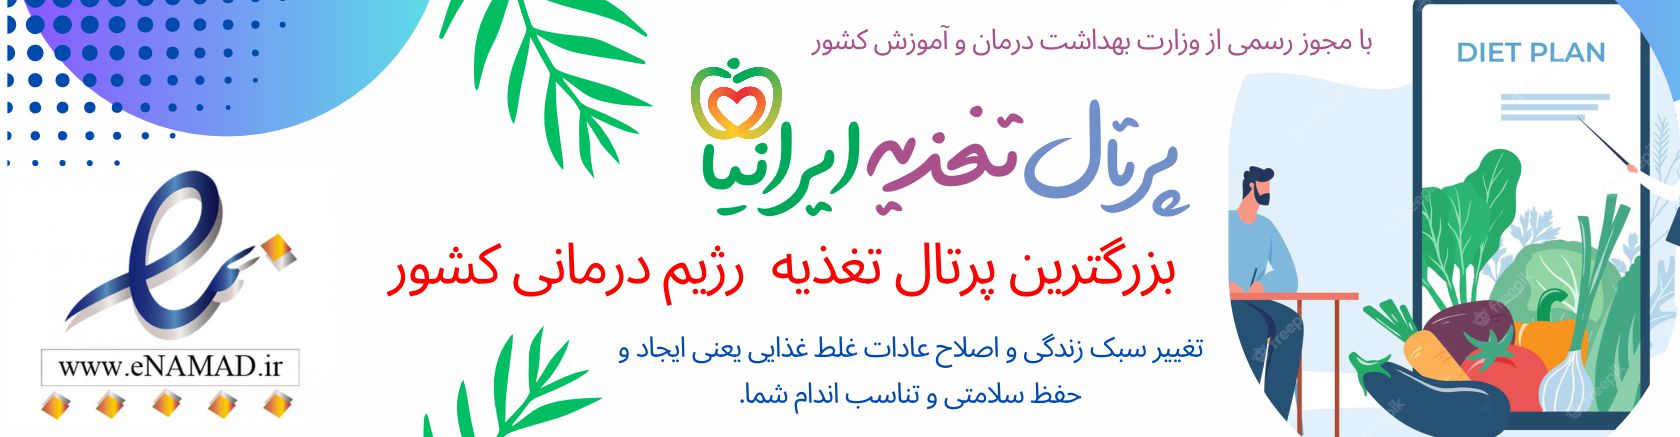 پرتال تغذیه ایرانیان | ارائه دهنده انواع خدمات تغذیه و رژیم غذایی